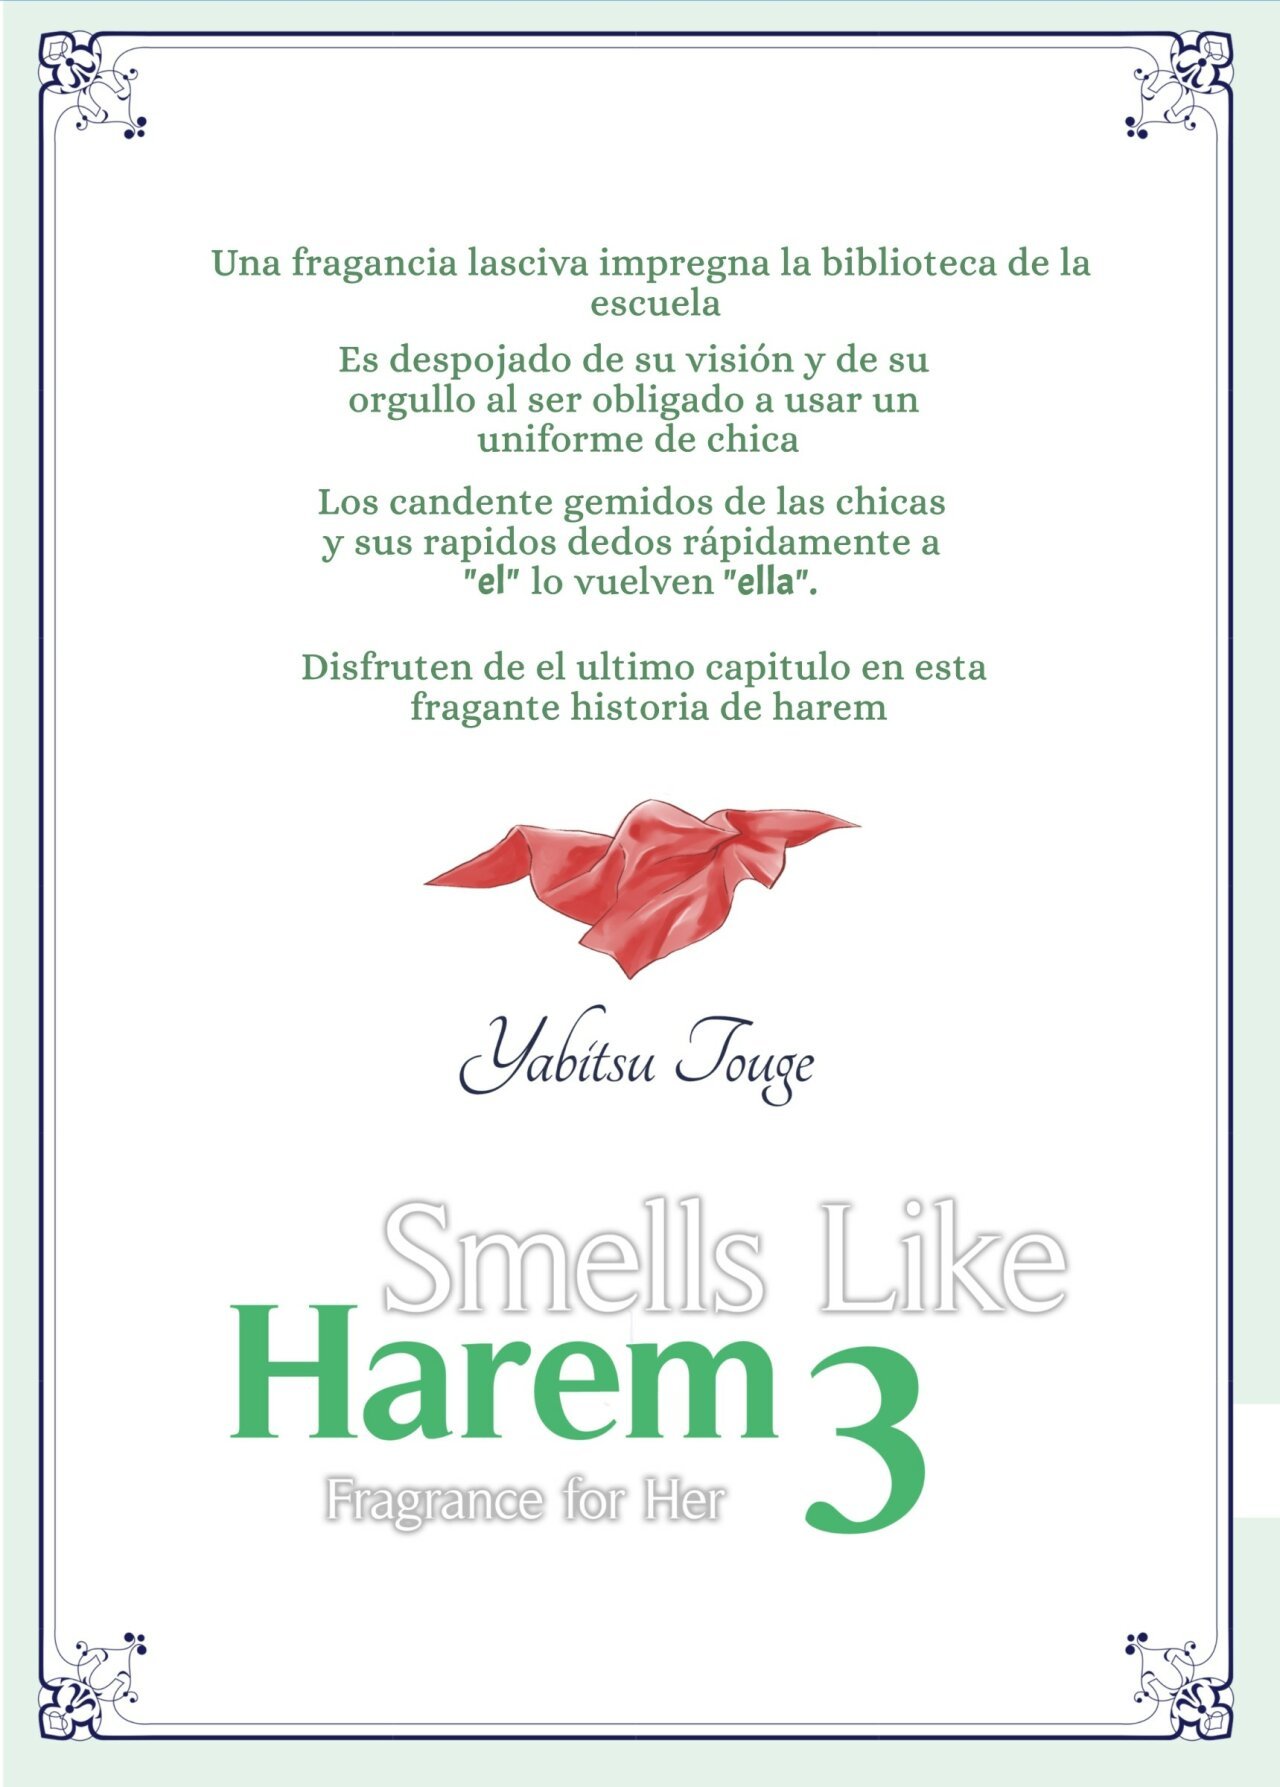 Smells Like Harem 3 - Fragrance for Her - 42